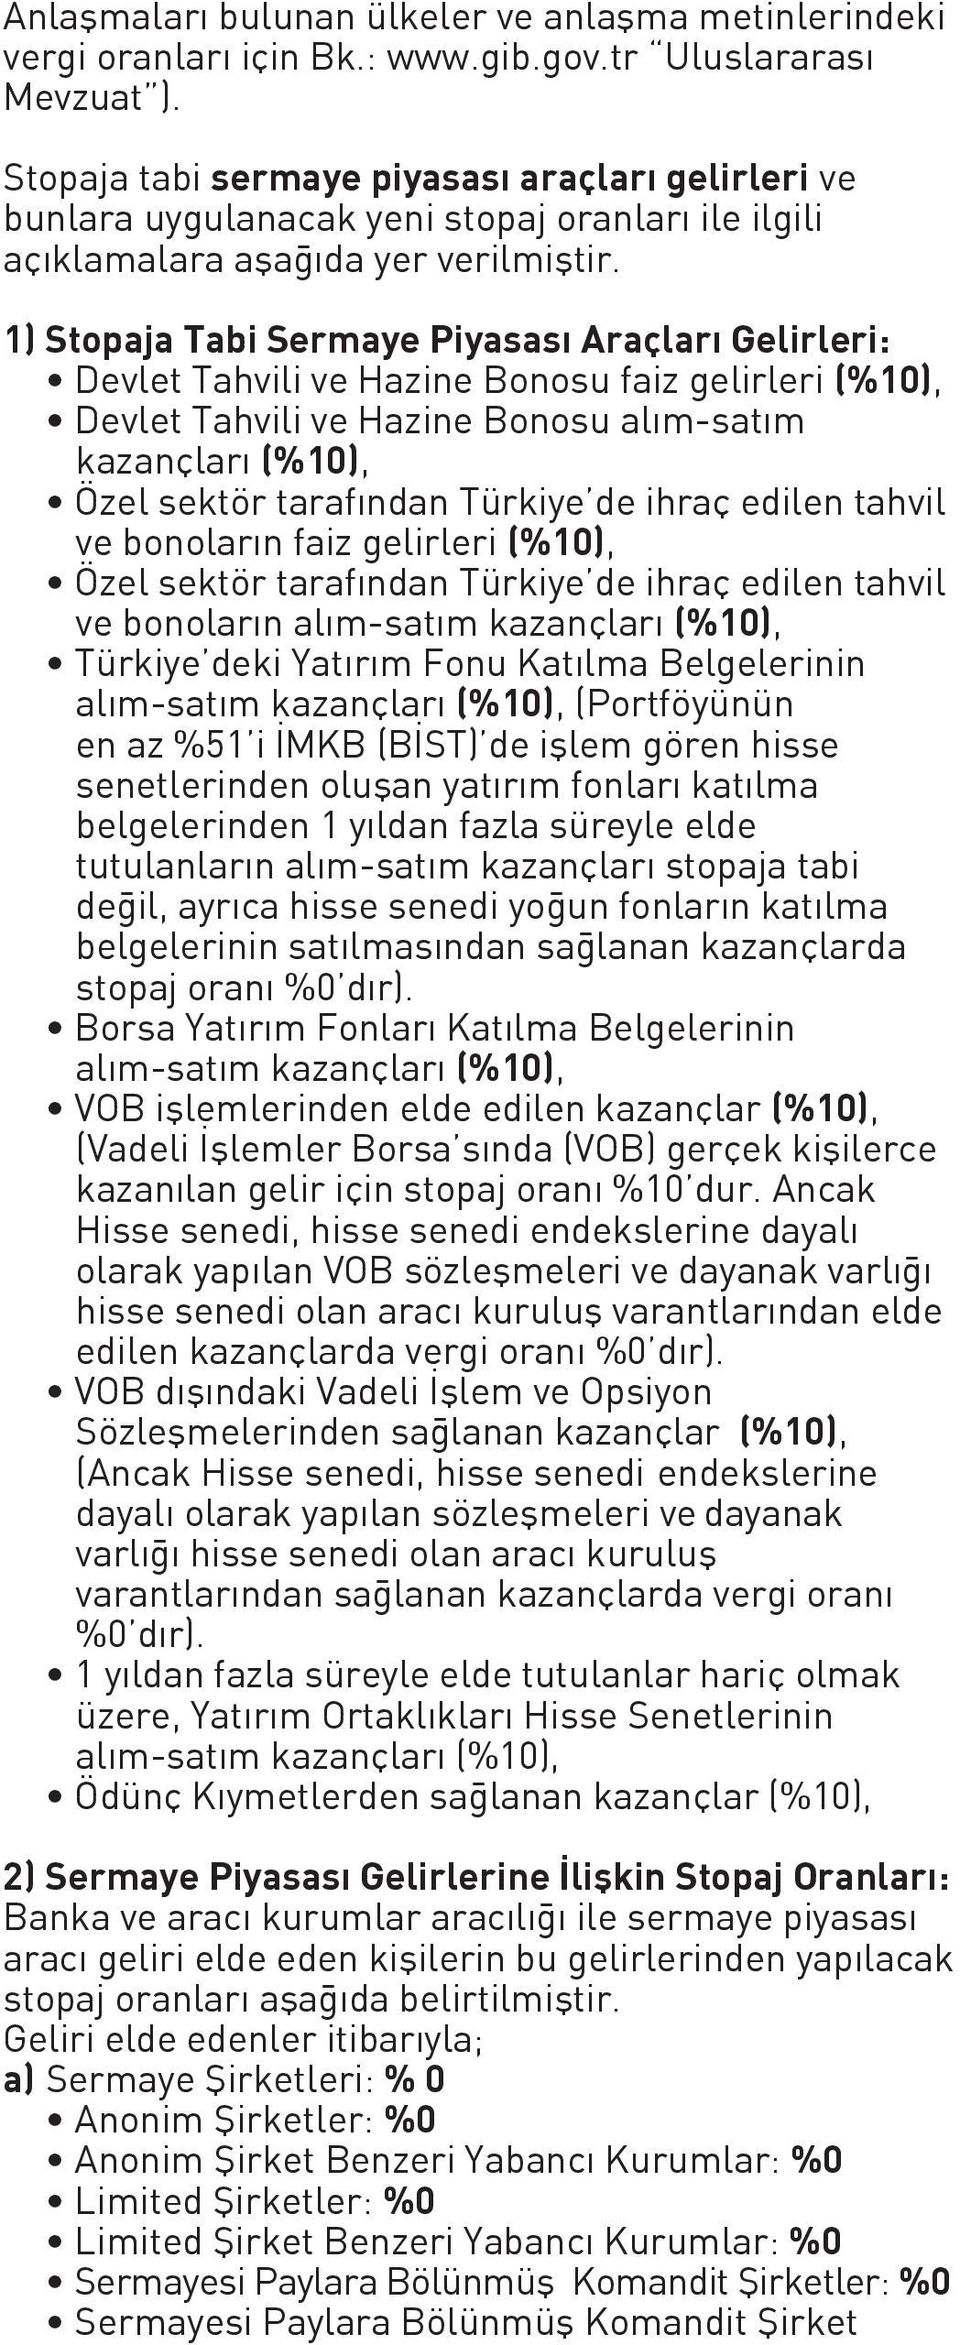 1) Stopaja Tabi Sermaye Piyasası Araçları Gelirleri: Devlet Tahvili ve Hazine Bonosu faiz gelirleri (%10), Devlet Tahvili ve Hazine Bonosu alım-satım kazançları (%10), Özel sektör tarafından Türkiye